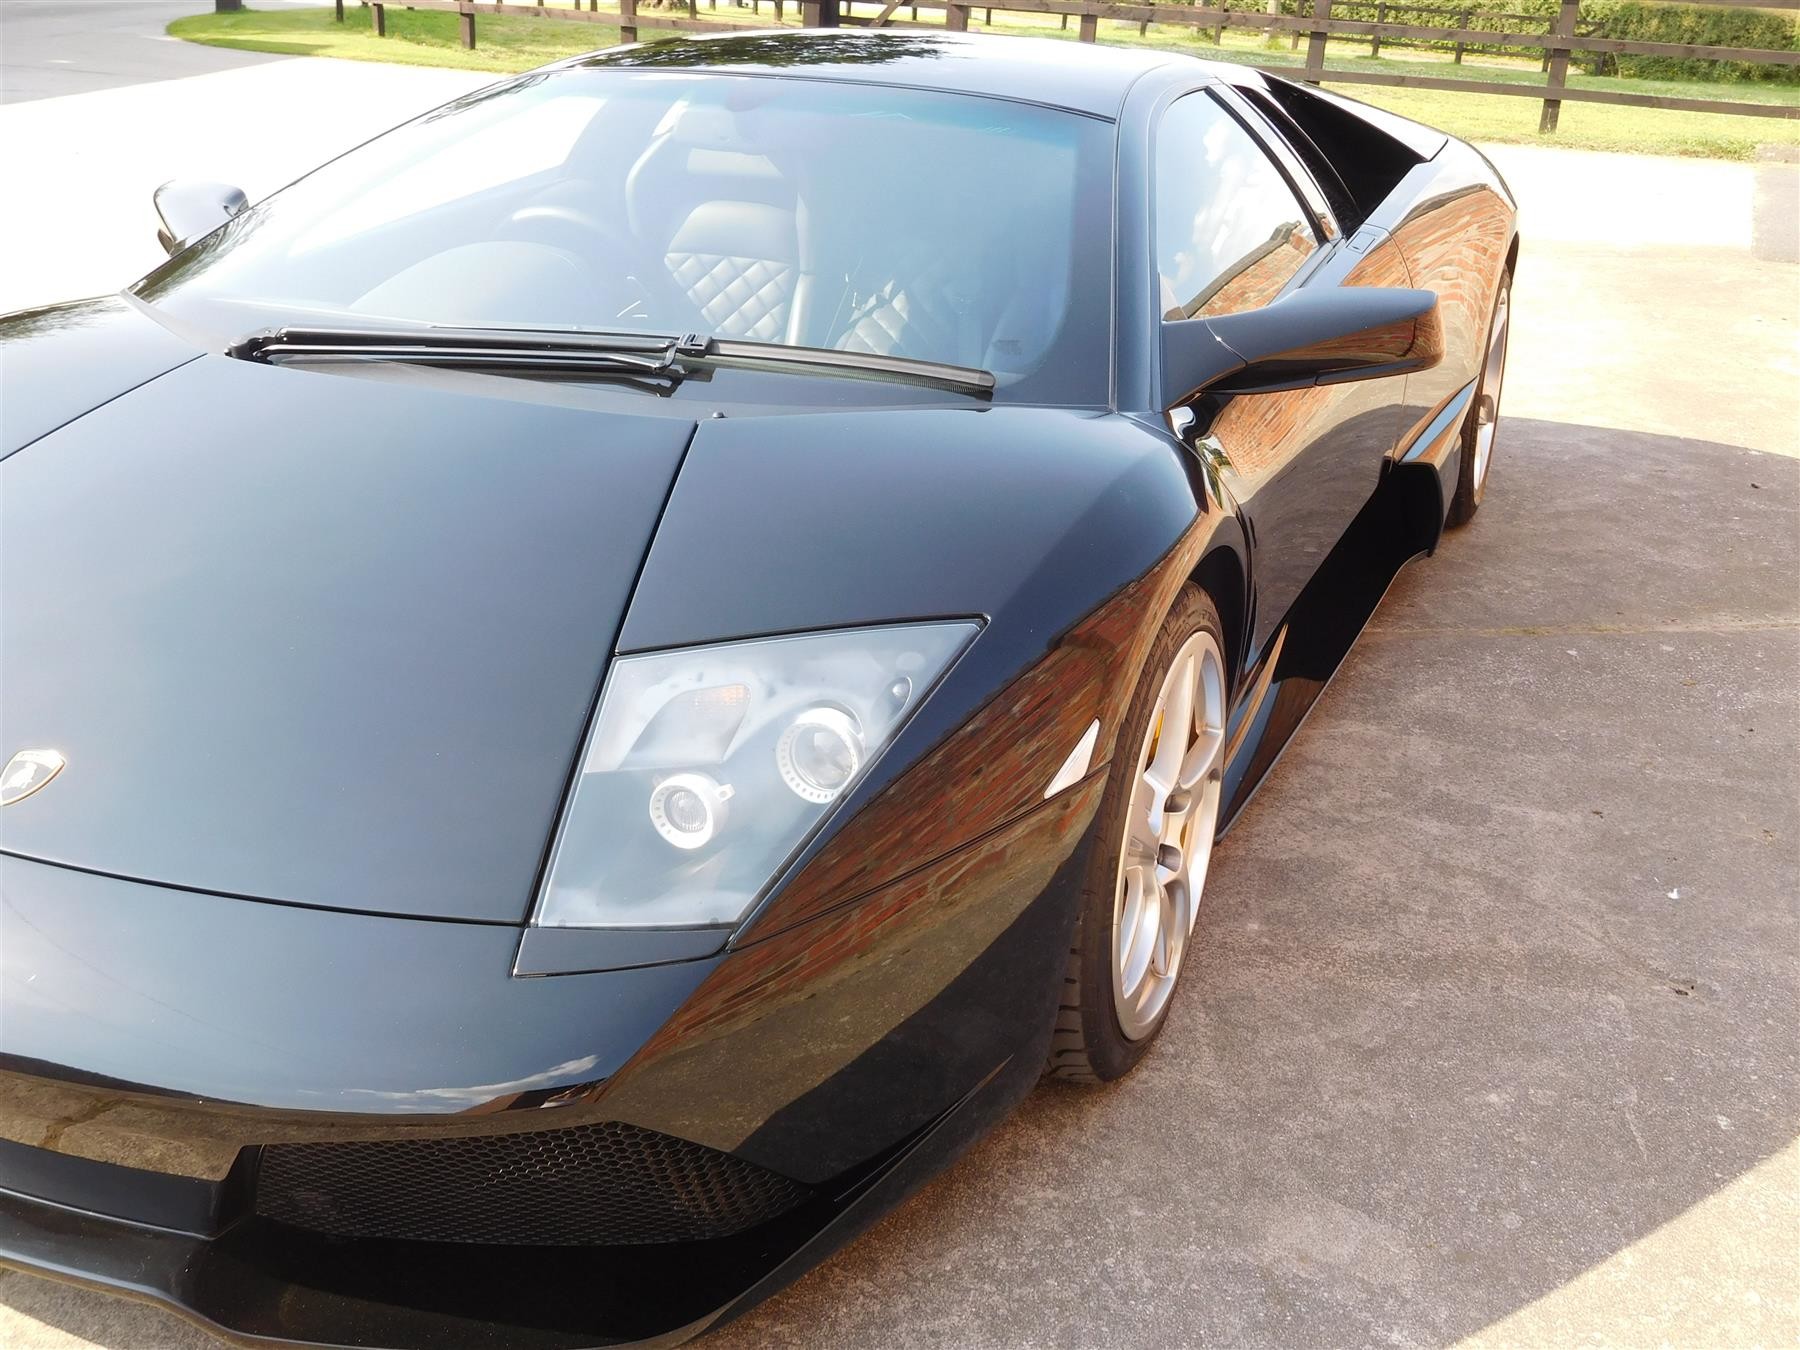 Lamborghini Murcielago с пробегом всего 300 километров